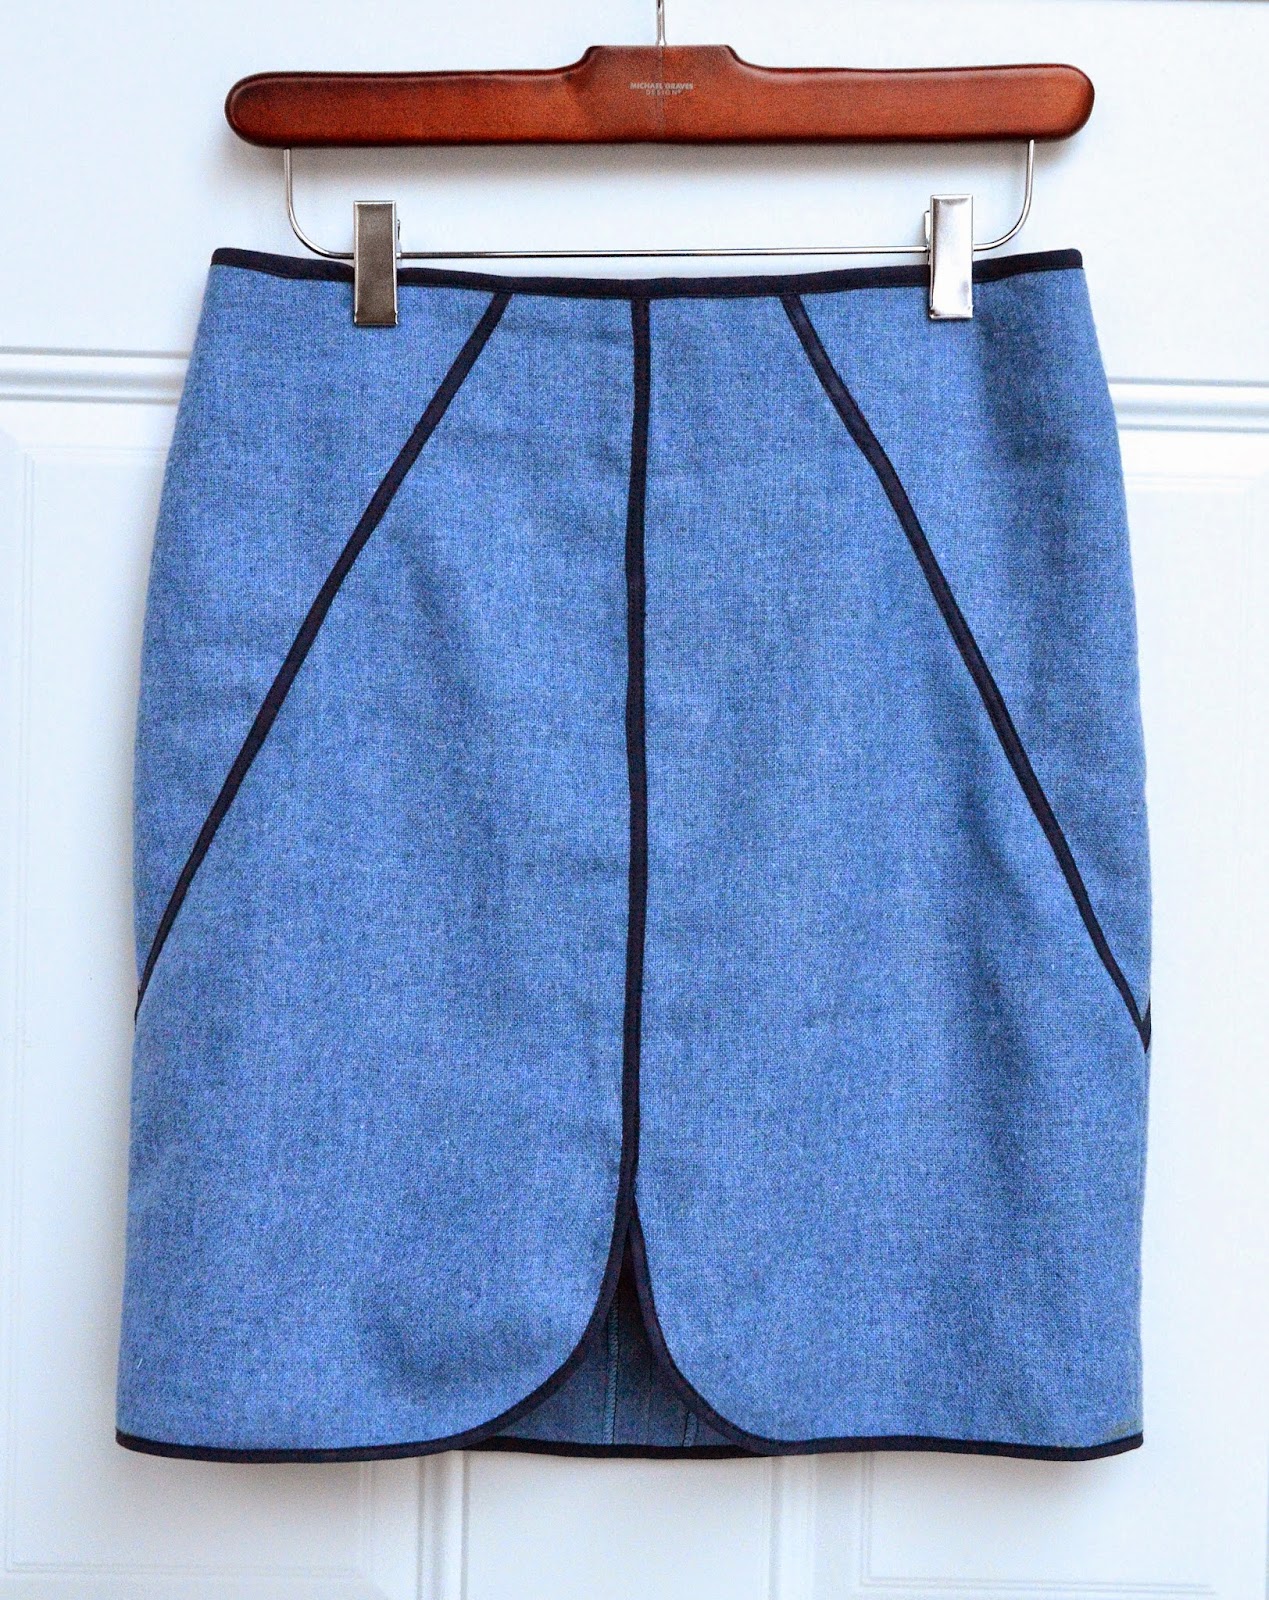 ikat bag: Five Skirts